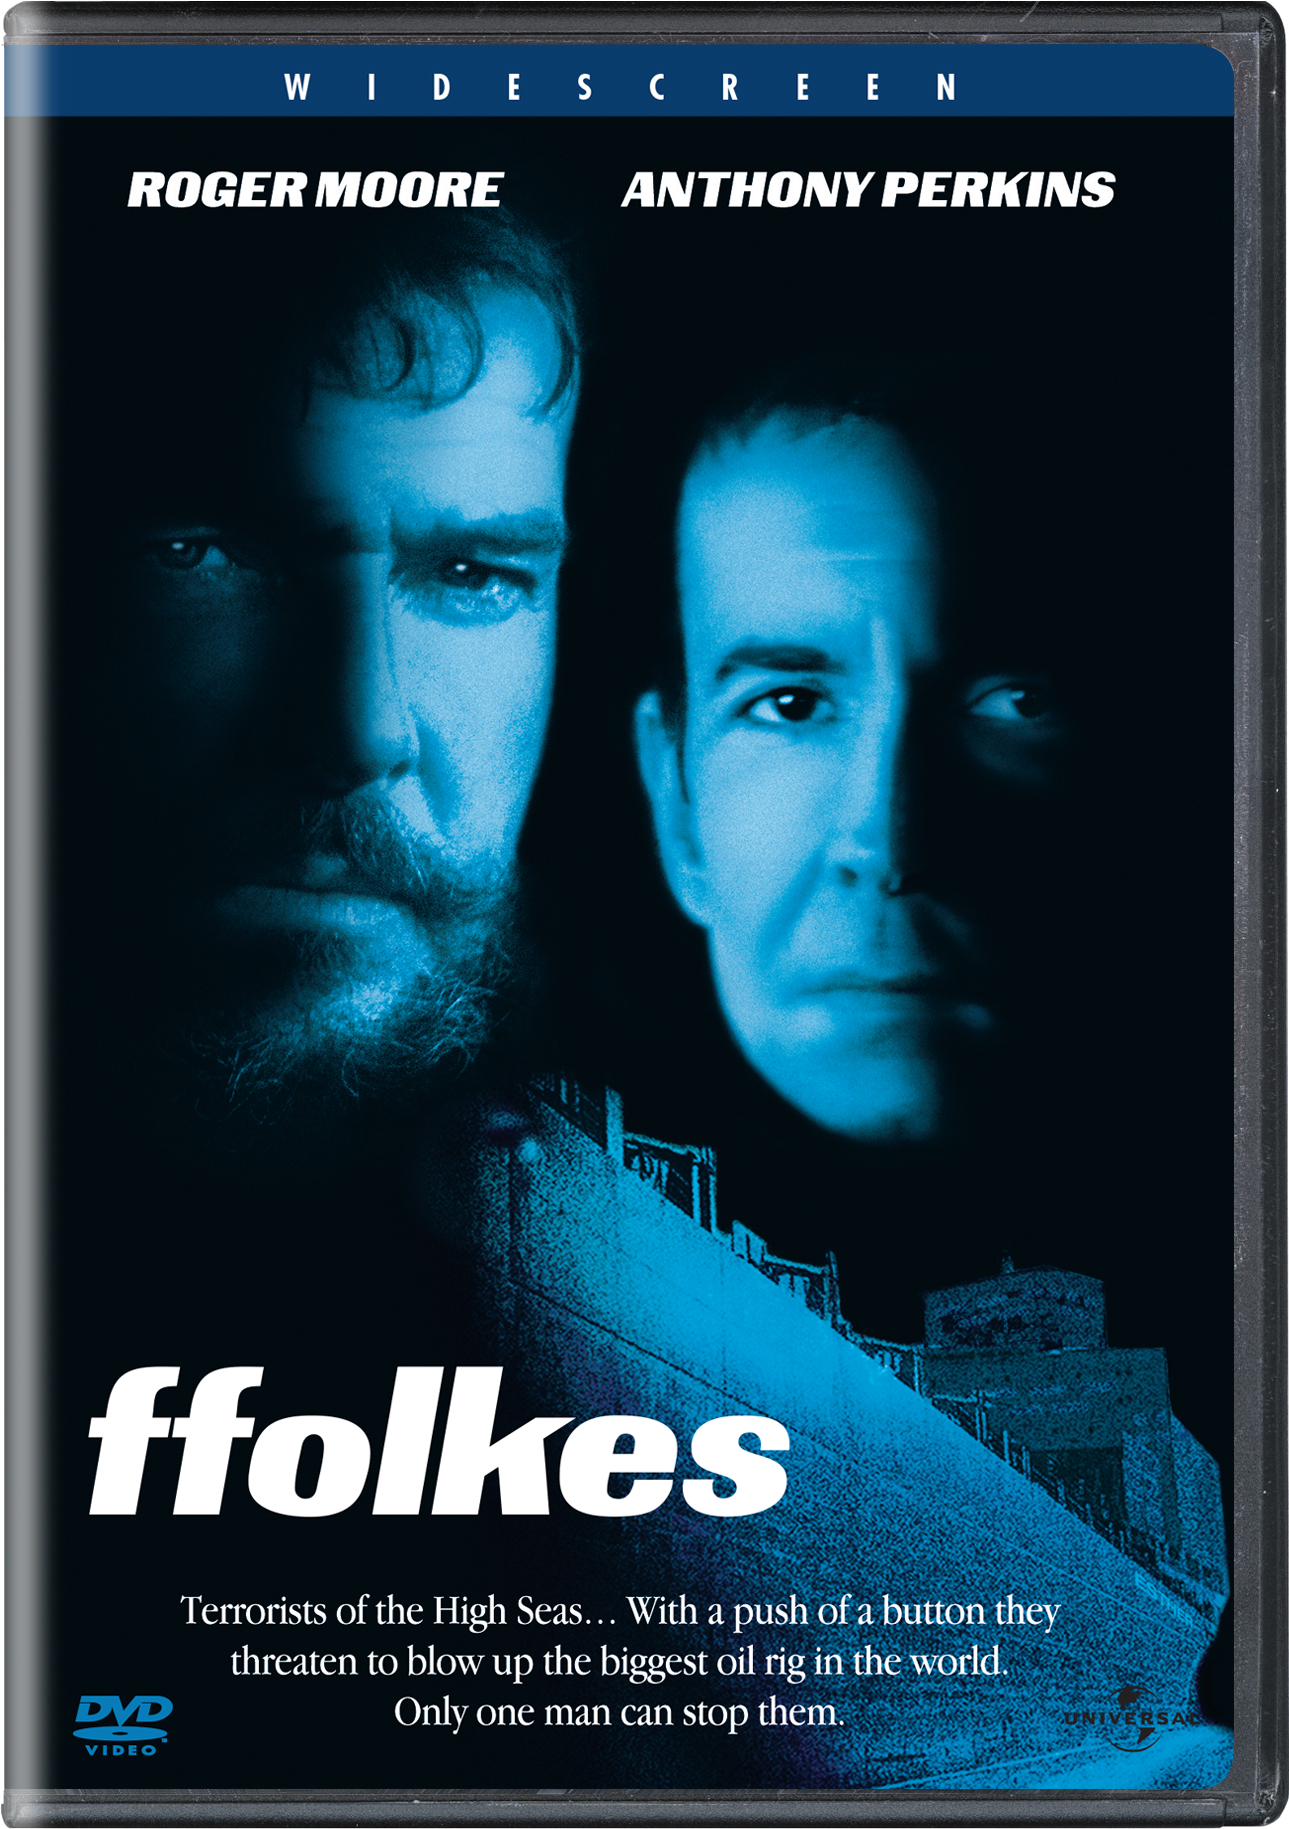 Ffolkes - DVD [ 1980 ] - Thriller Movies on DVD